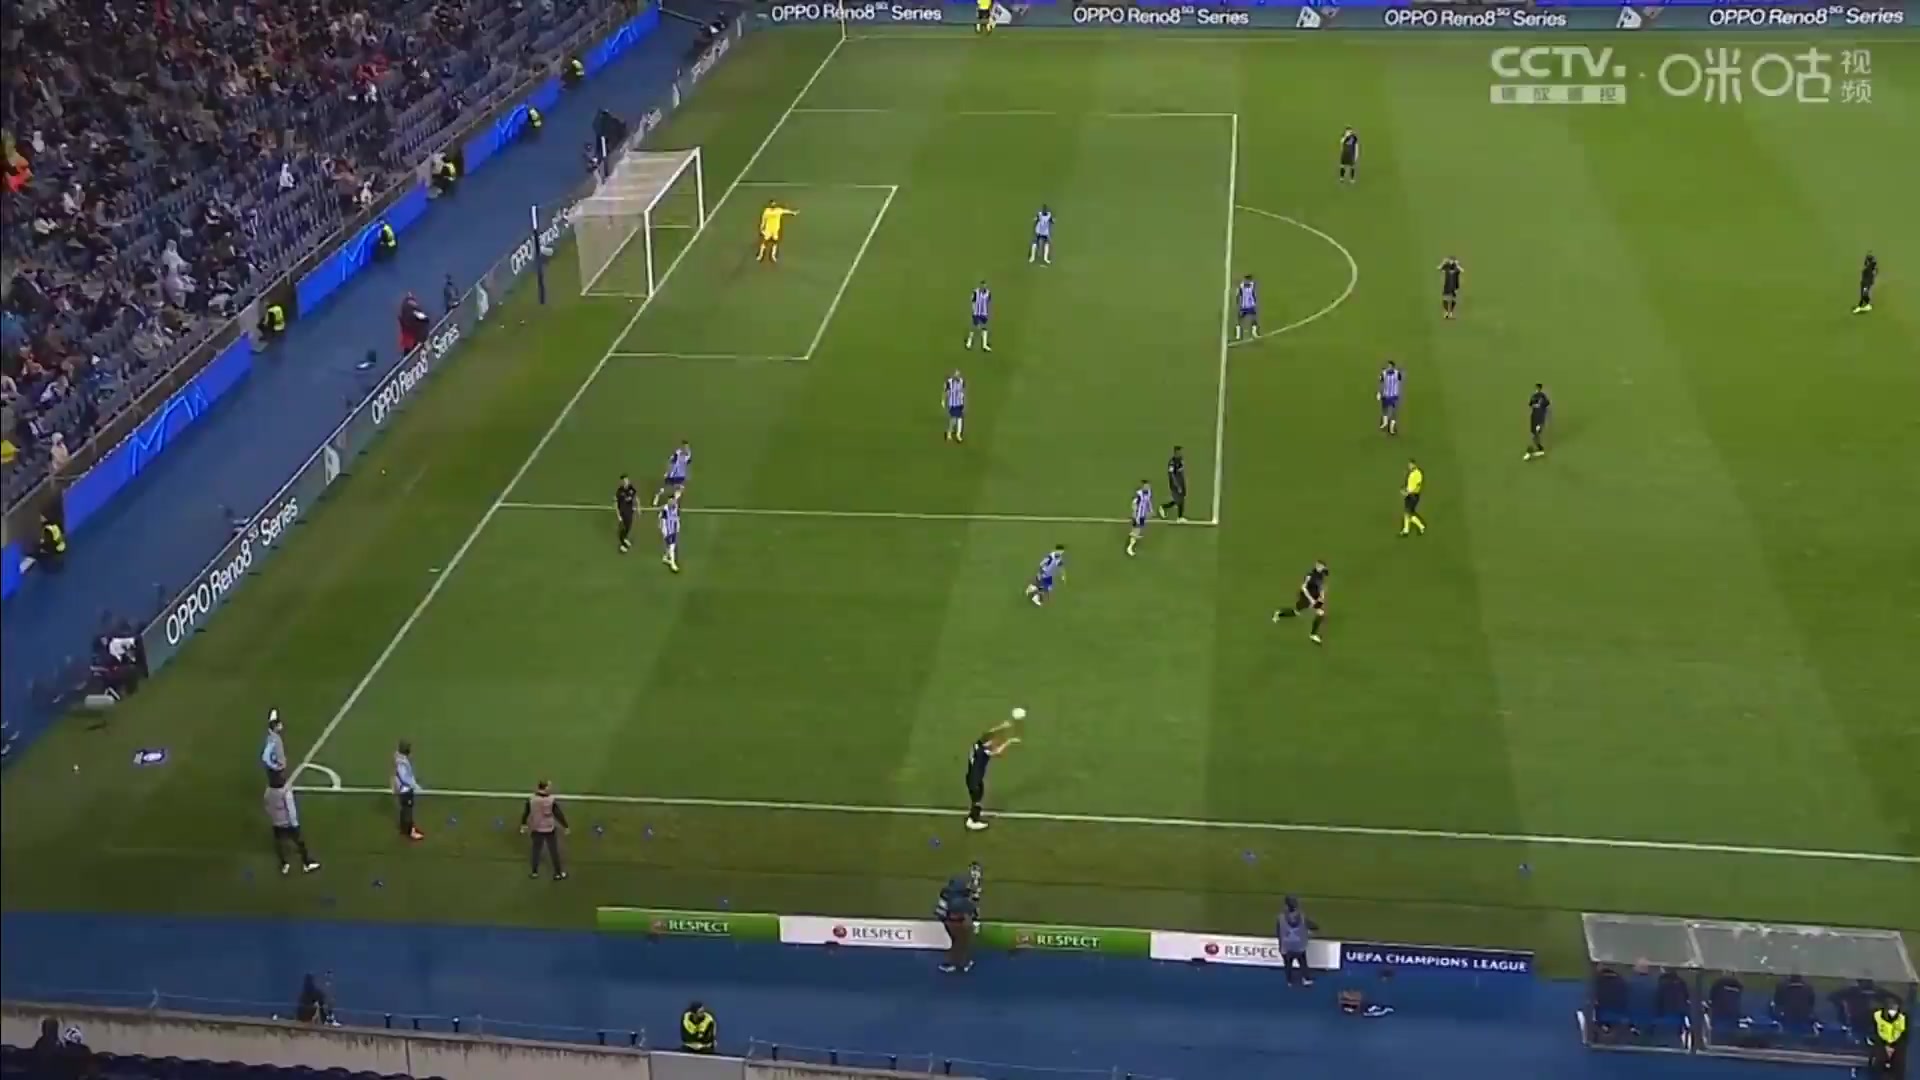 UEFA CL FC Porto Vs Club Brugge Andreas Skov Olsen Goal in 51 min, Score 0:3